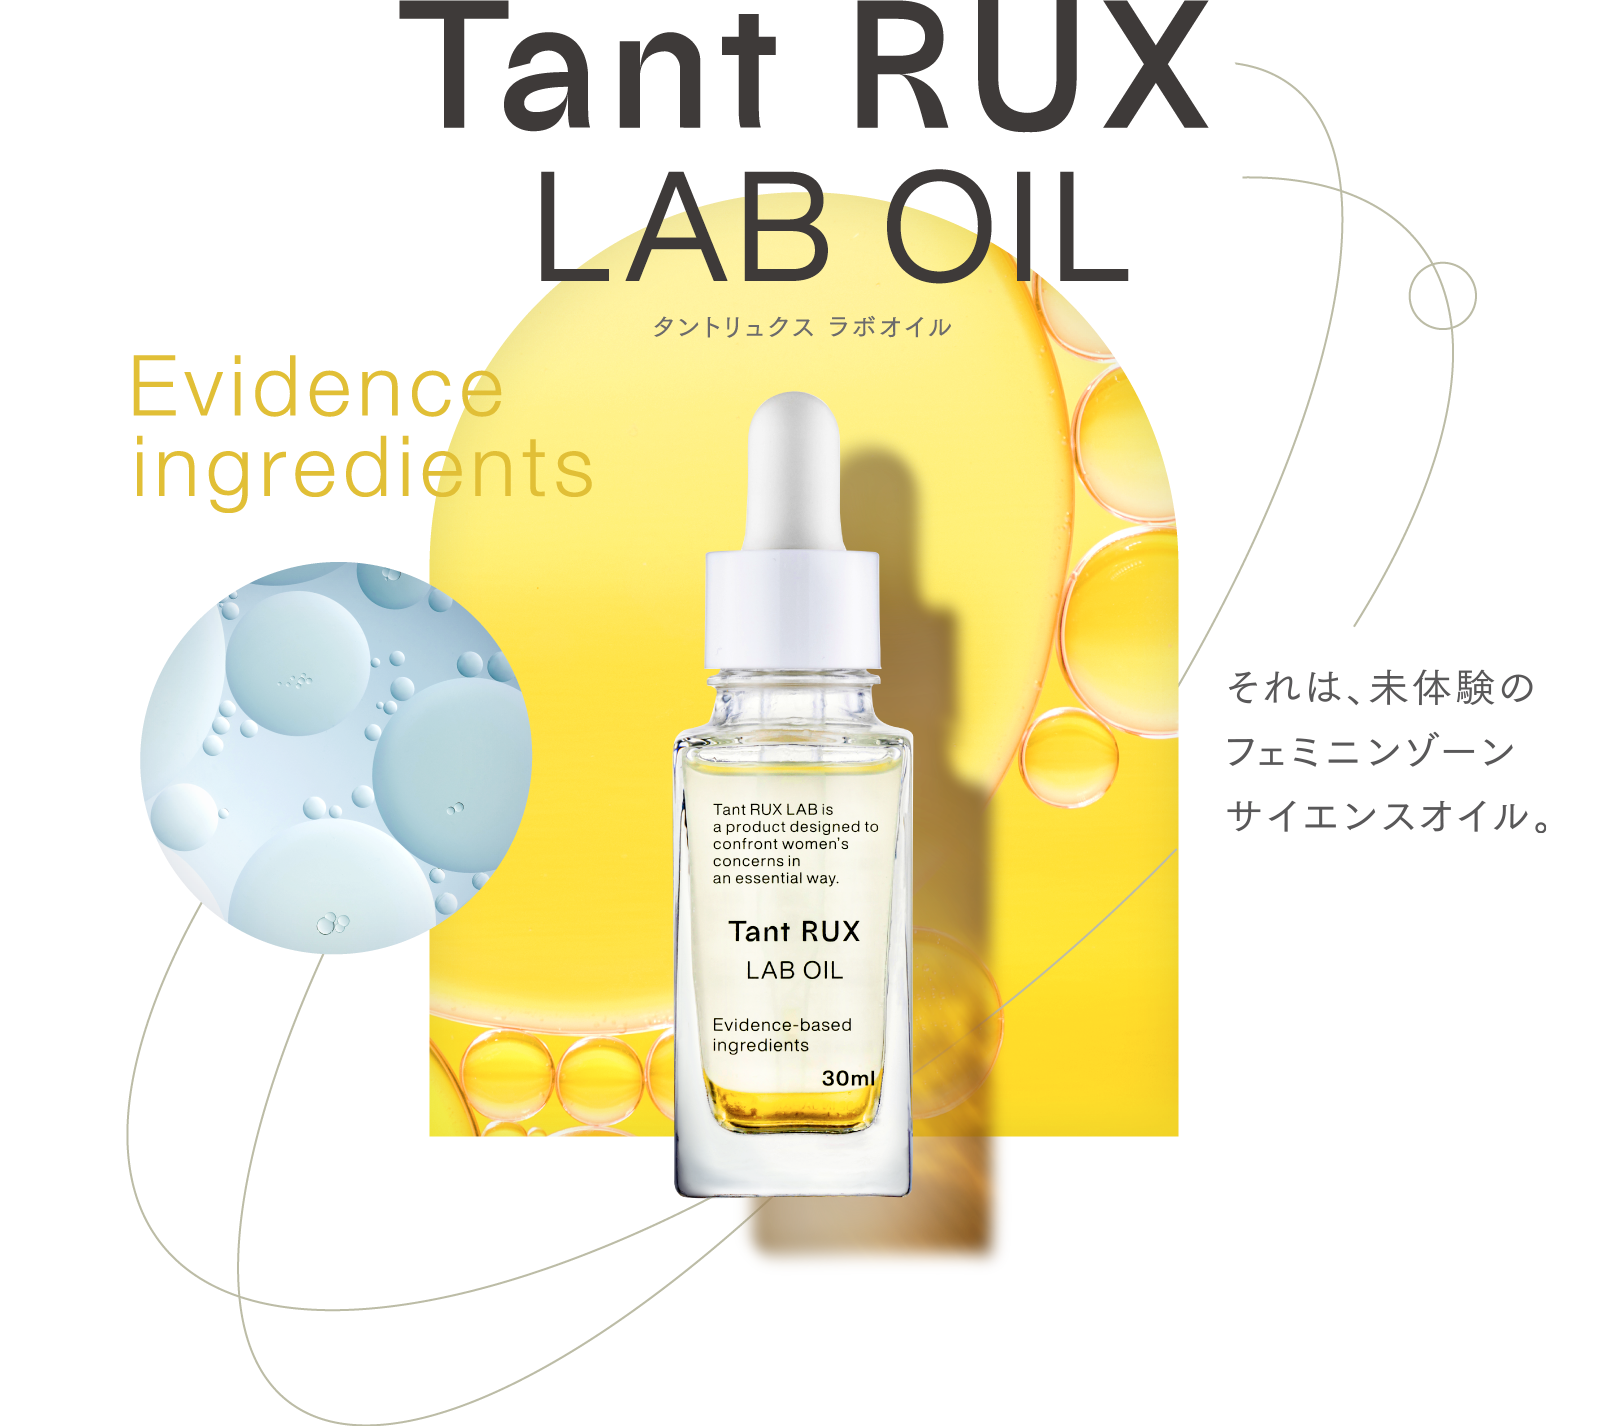 Tant Rux LAB OIL タントリュクス ラボオイル Evidence ingredients それは、未体験のフェミニンゾーンサイエンスオイル。